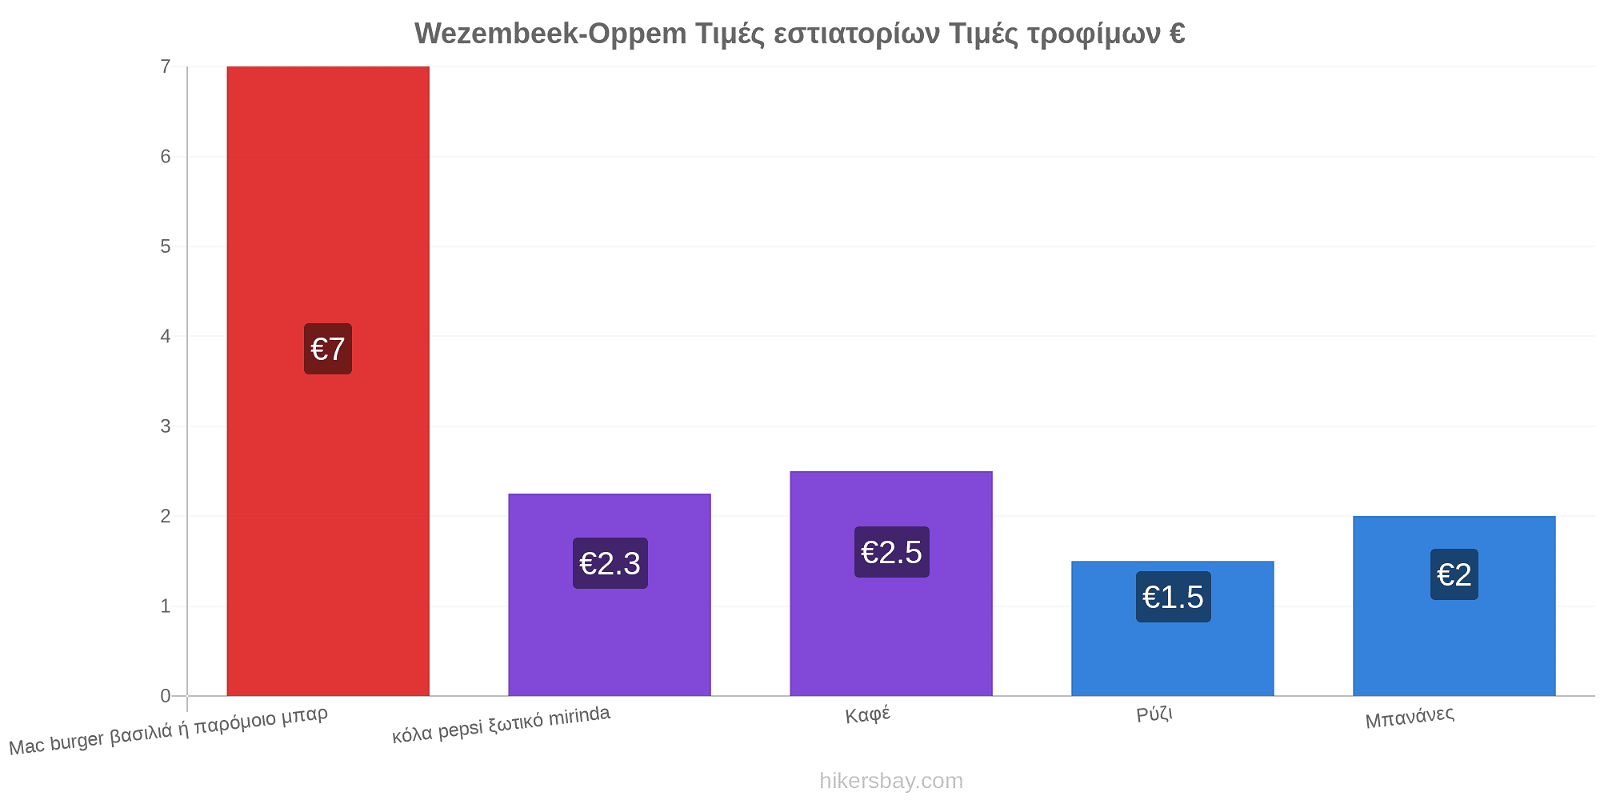 Wezembeek-Oppem αλλαγές τιμών hikersbay.com